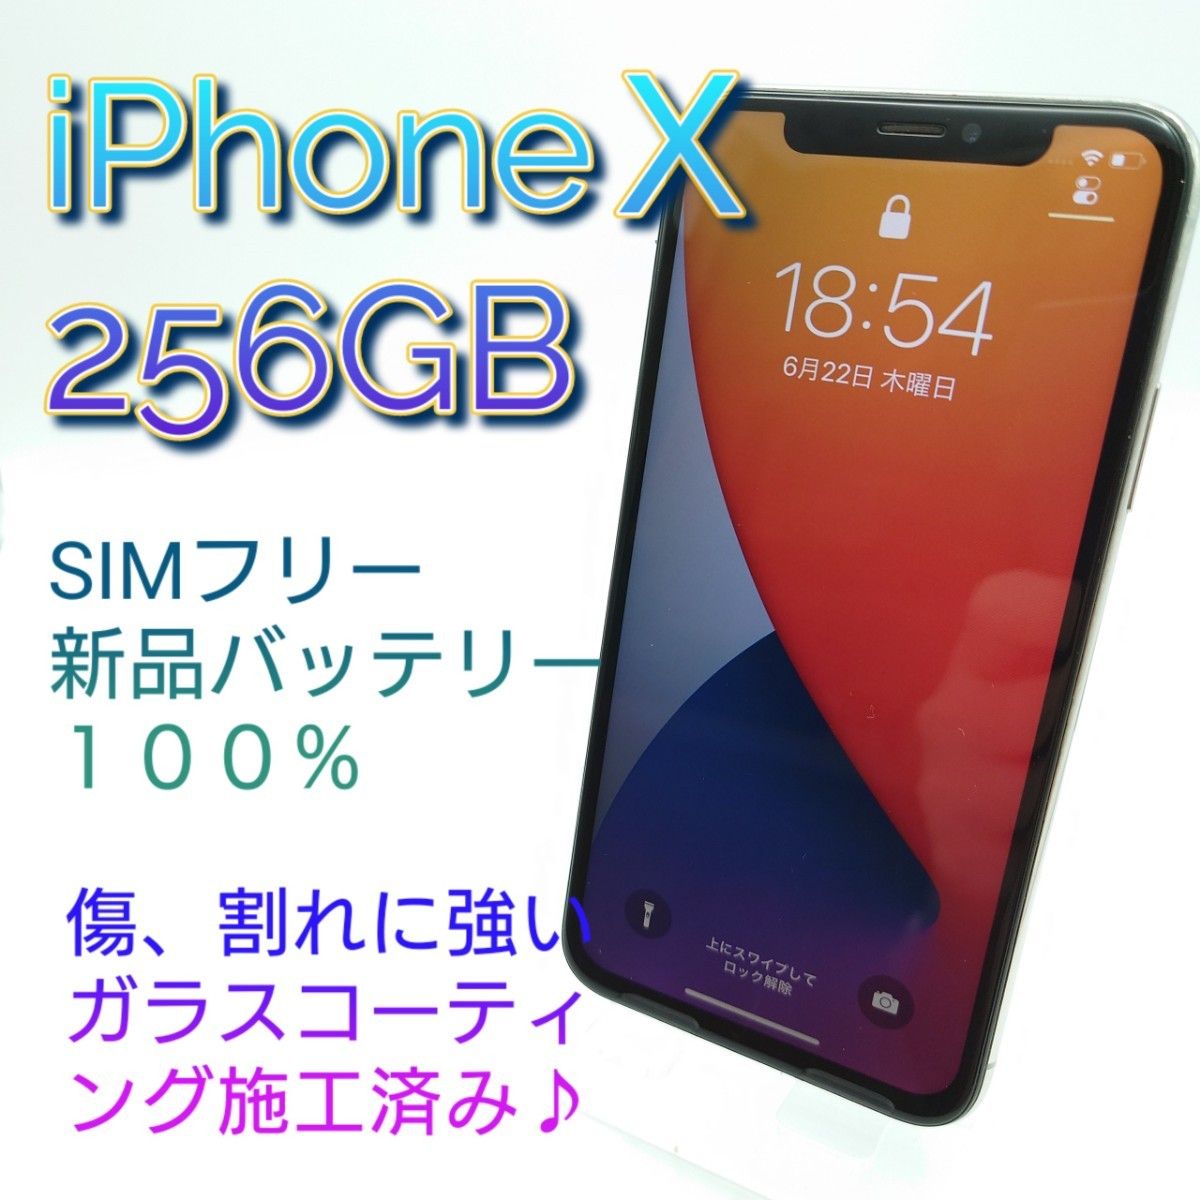 9 美品 iPhone X 256GB シルバー SIMフリー 新品バッテリー Apple SIM 